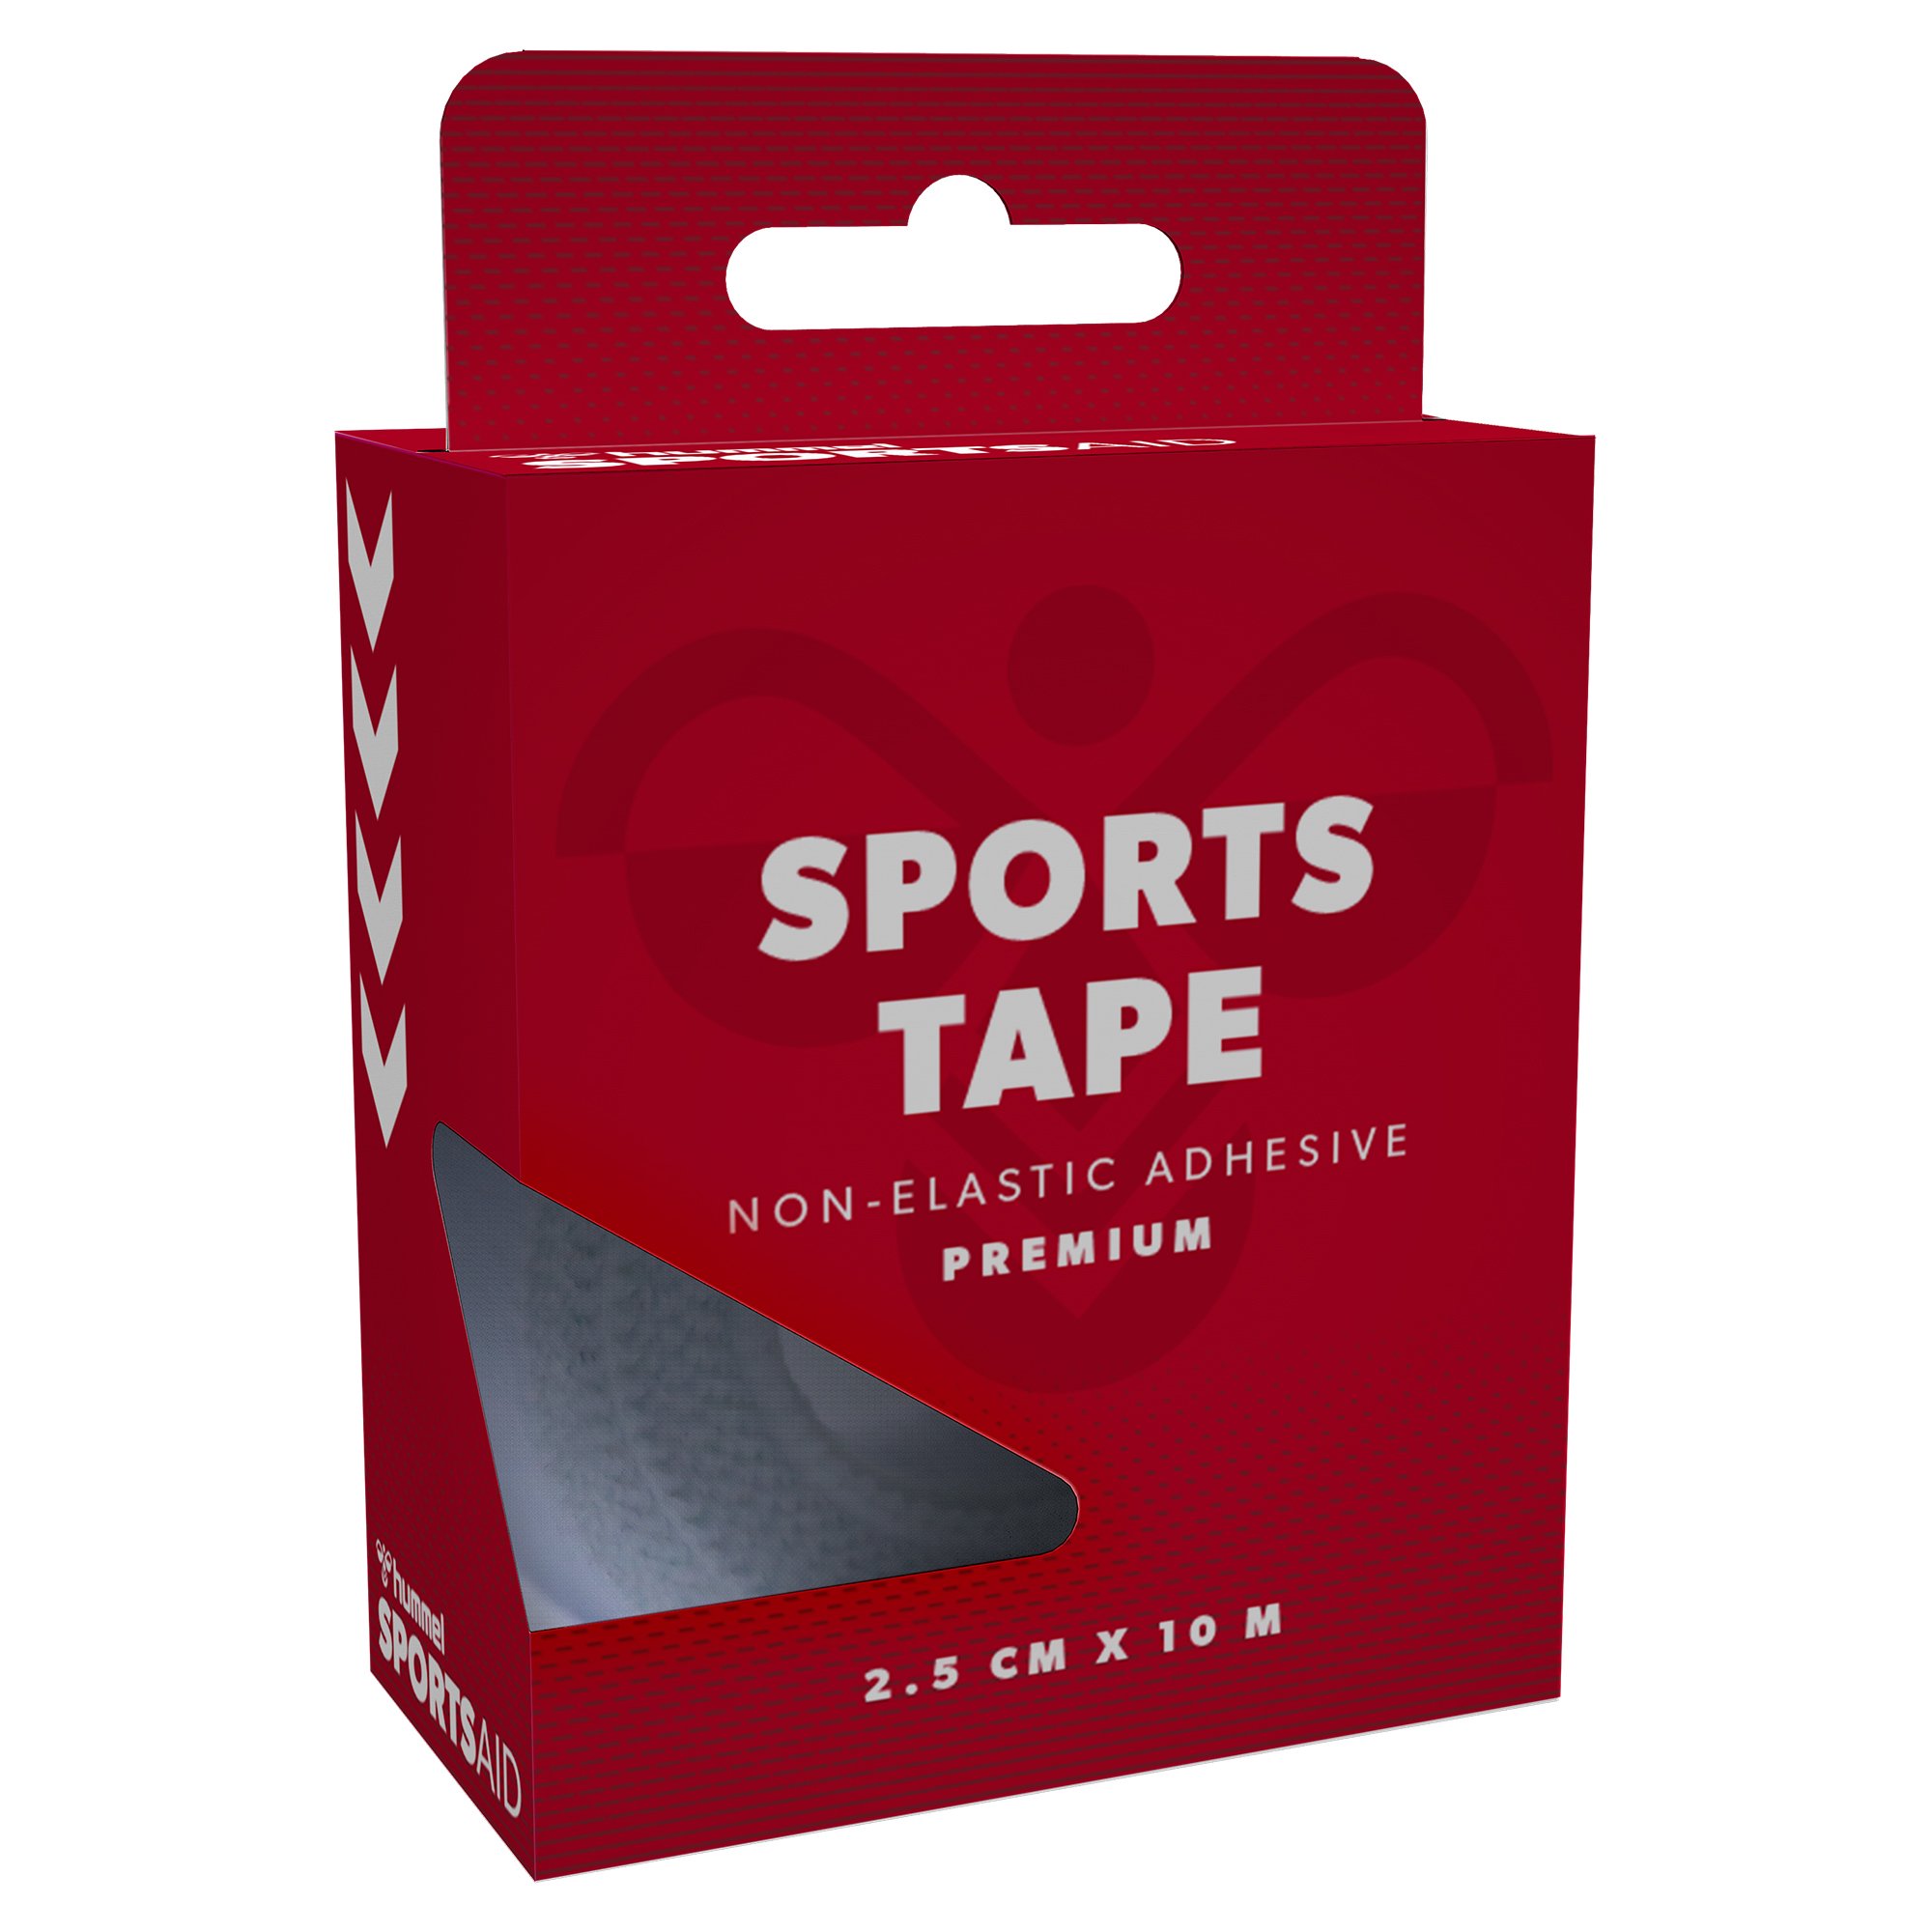 Sportsaid Premium Sports Tape